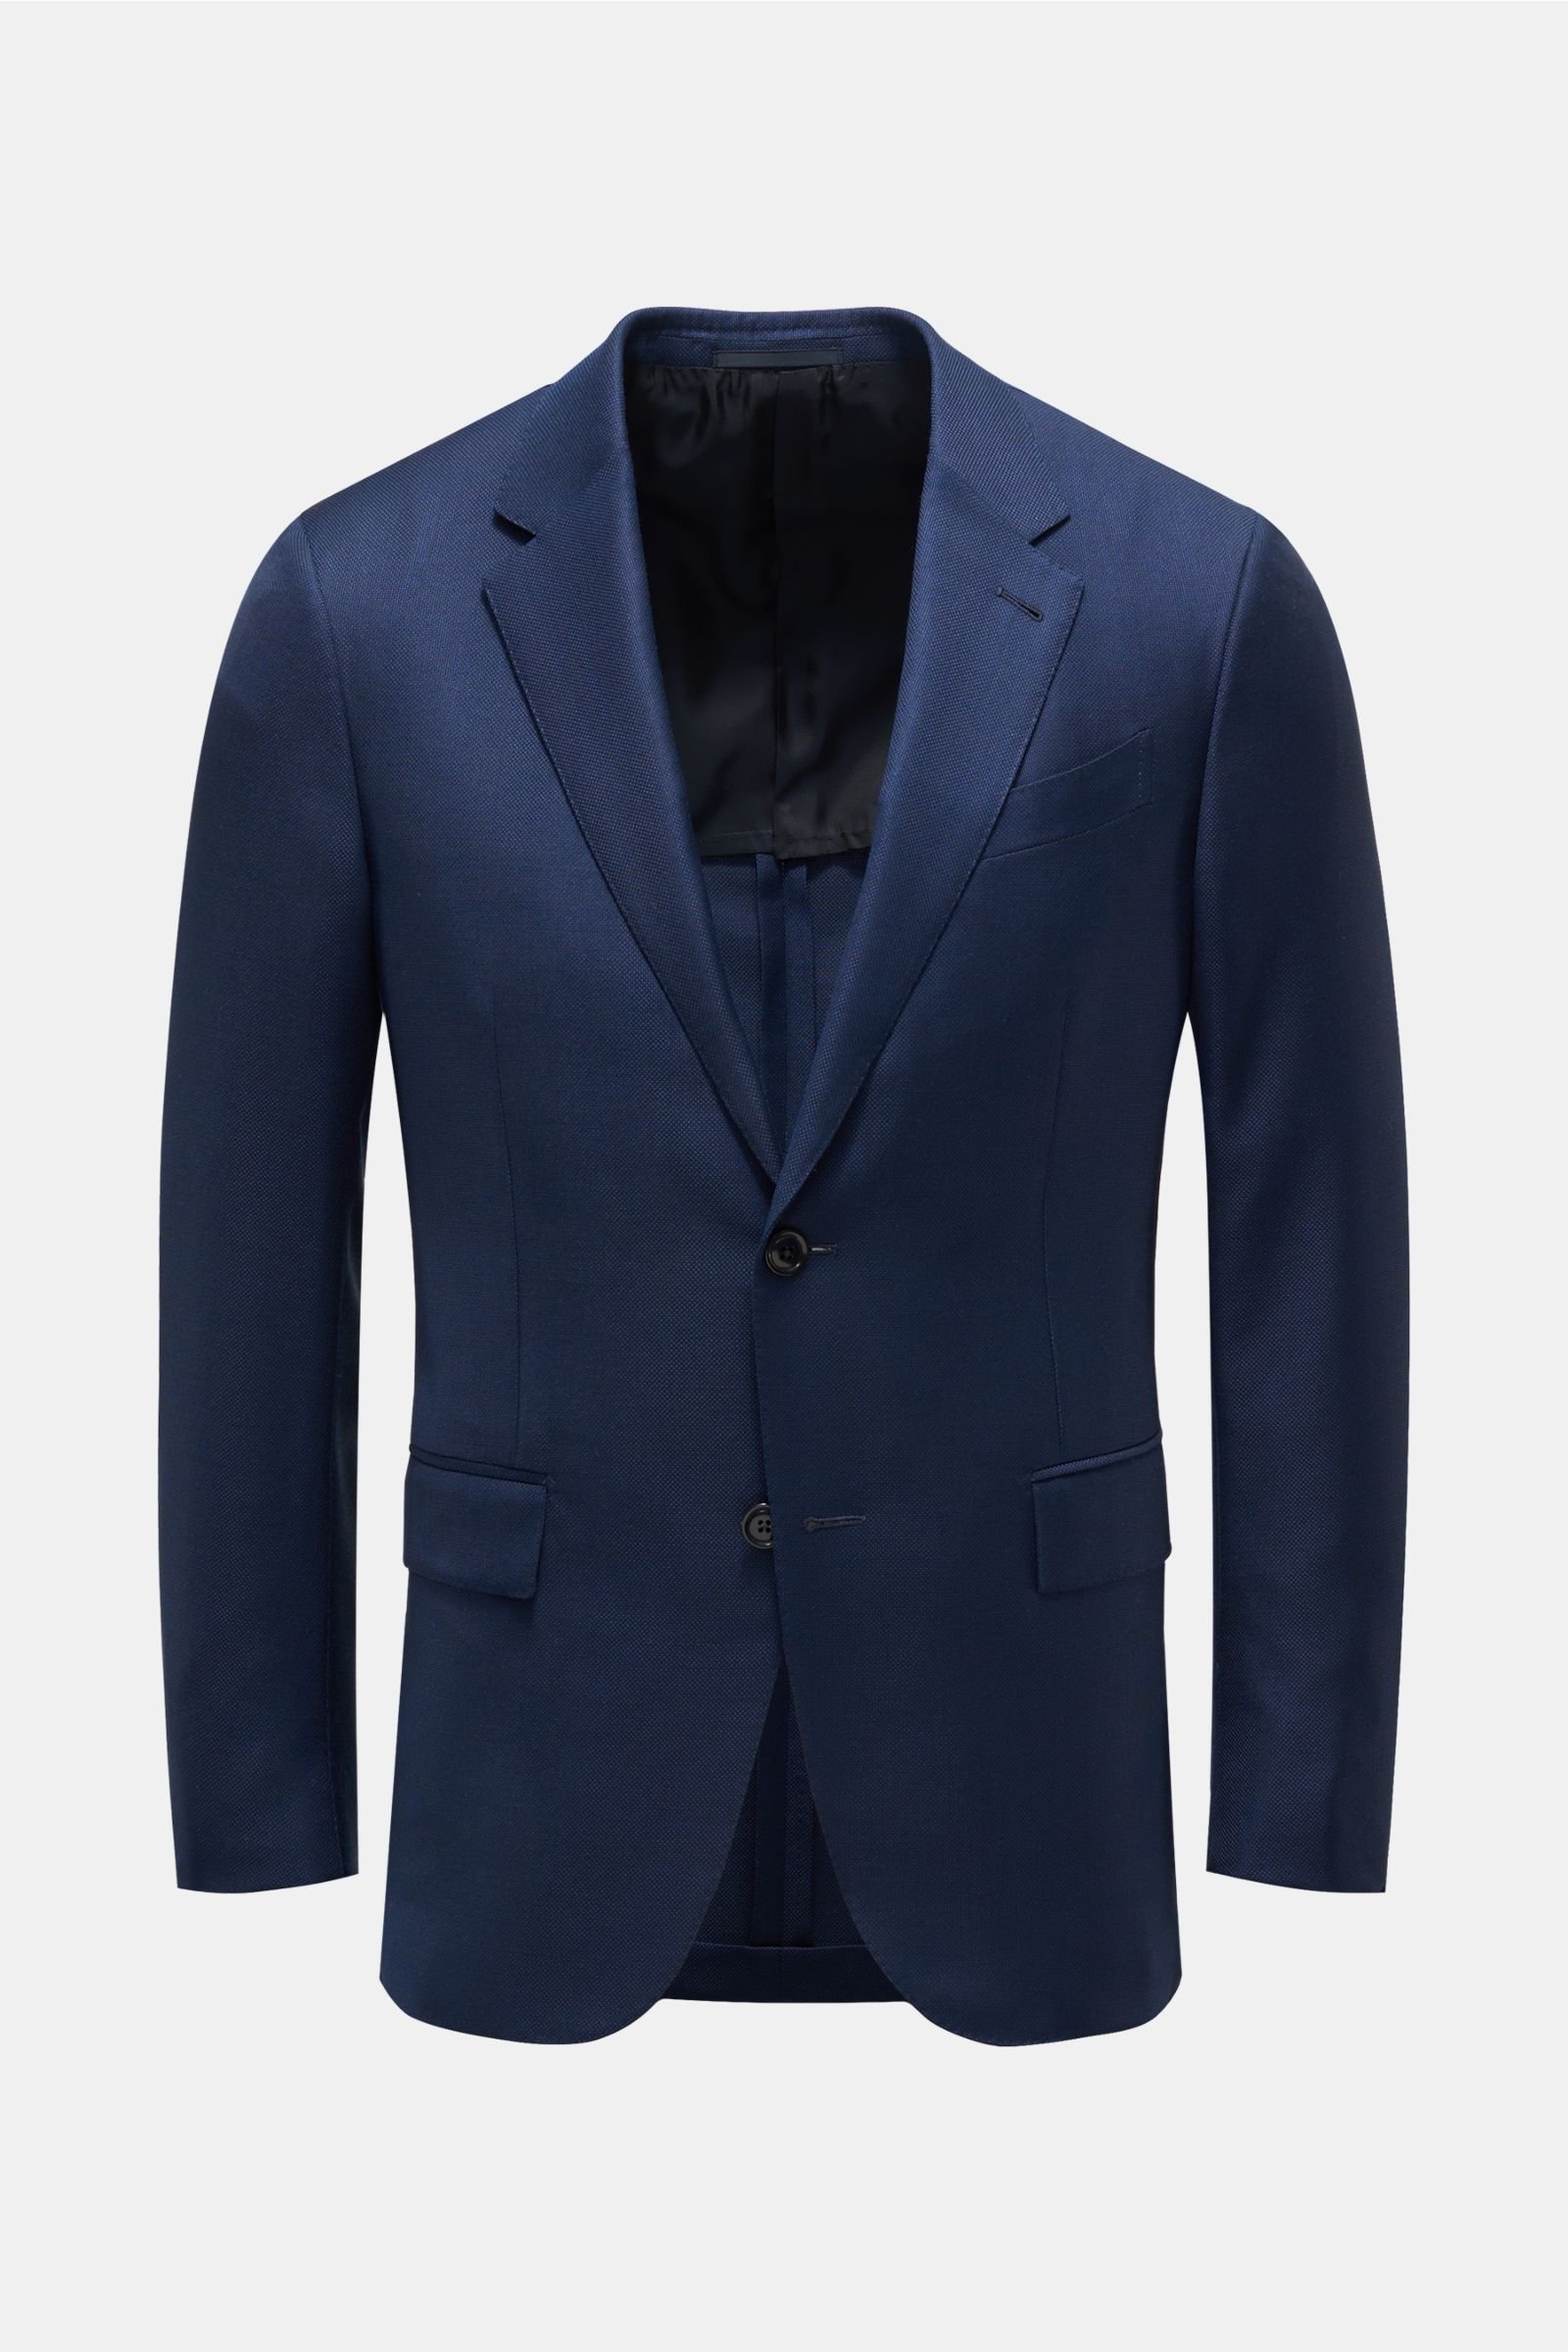 Smart-casual jacket 'Milano Easy' dark blue